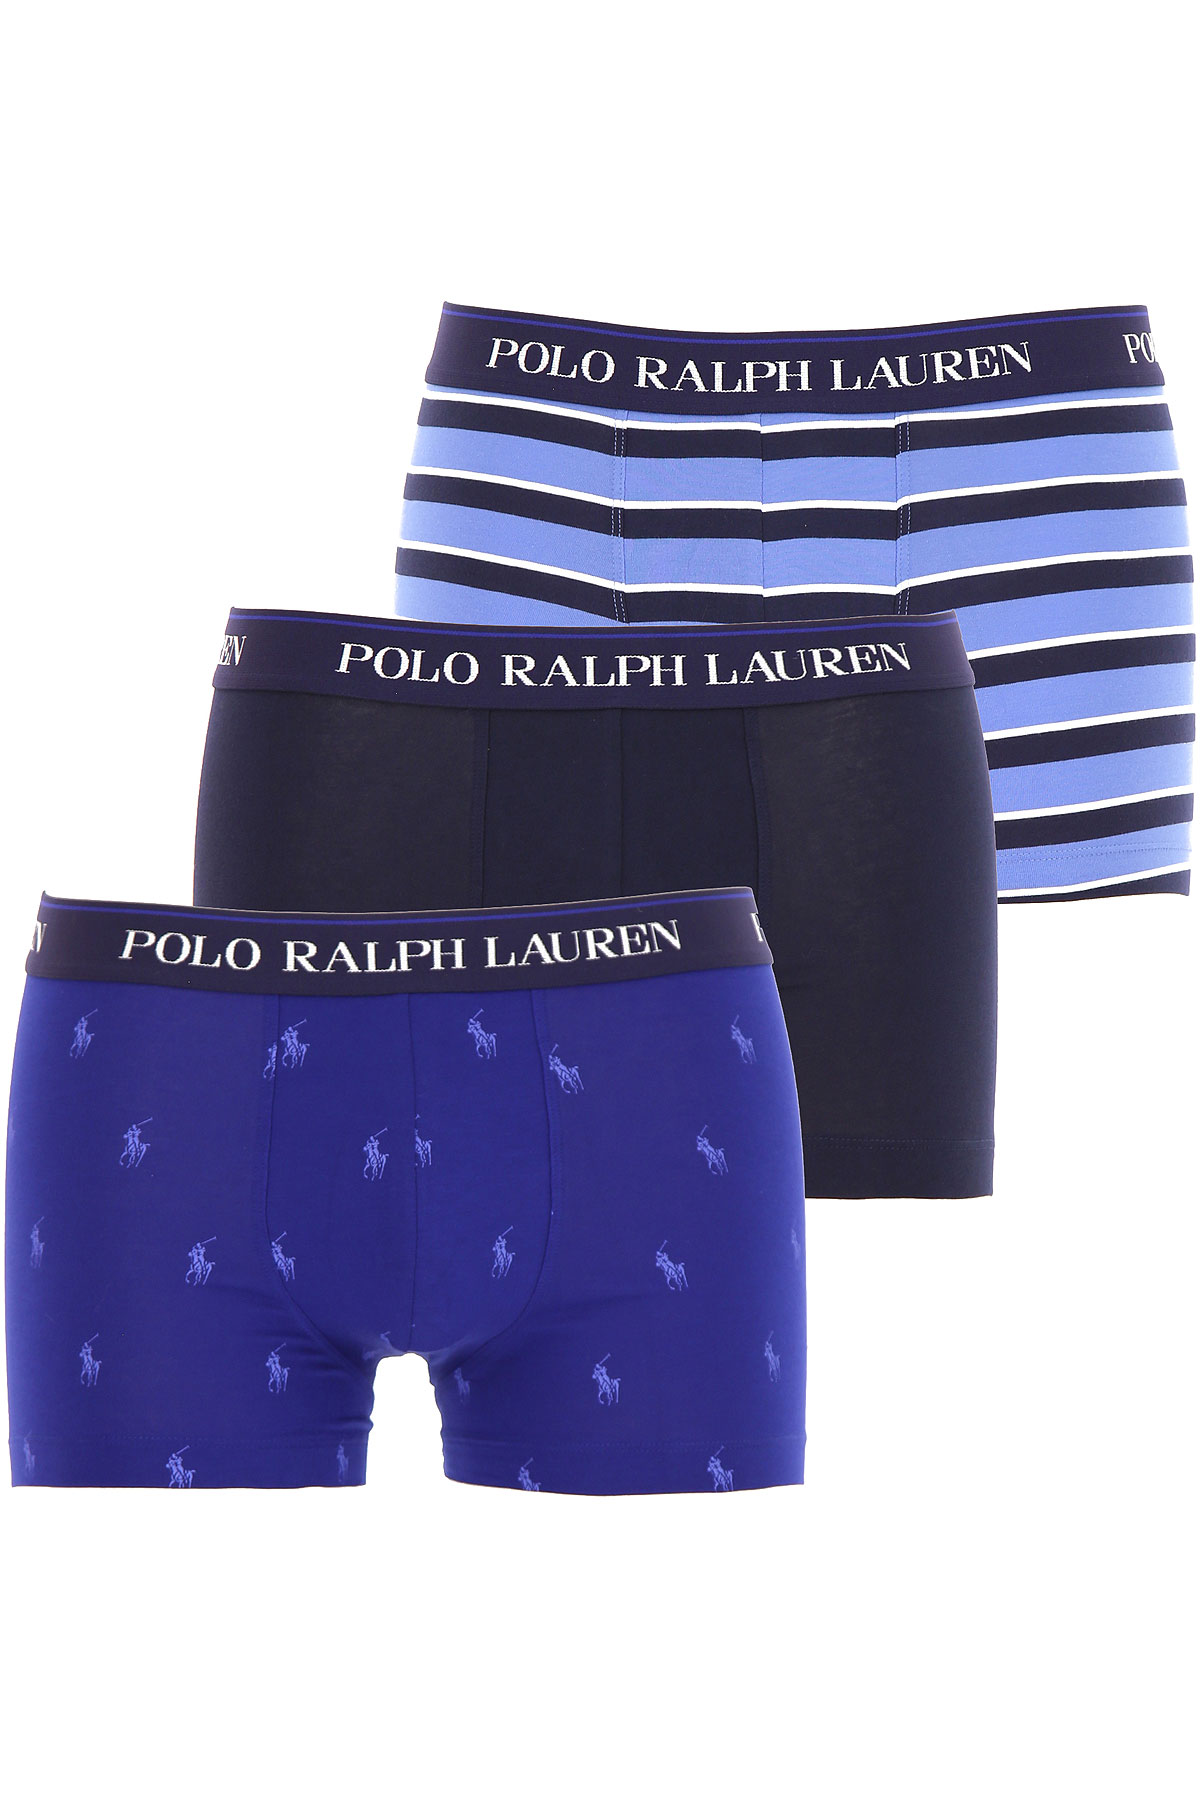 Ralph Lauren Boxer Shorts für Herren, Unterhose, Short, Boxer Günstig im Sale, 3 Pack, Blau, Baumwolle, 2017, M S XL